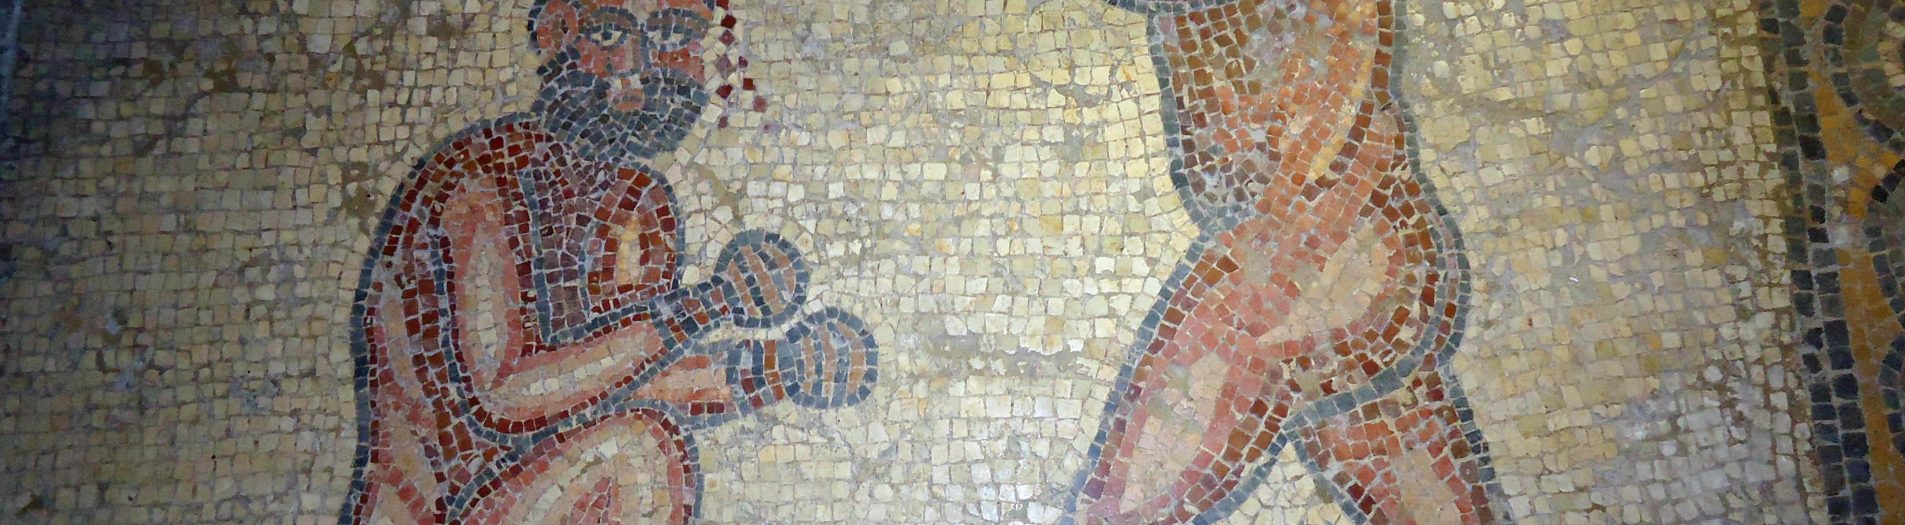 Les jeux athlétiques et le pugilat  dans la mosaïque africaine de la période romaine en Tunisie